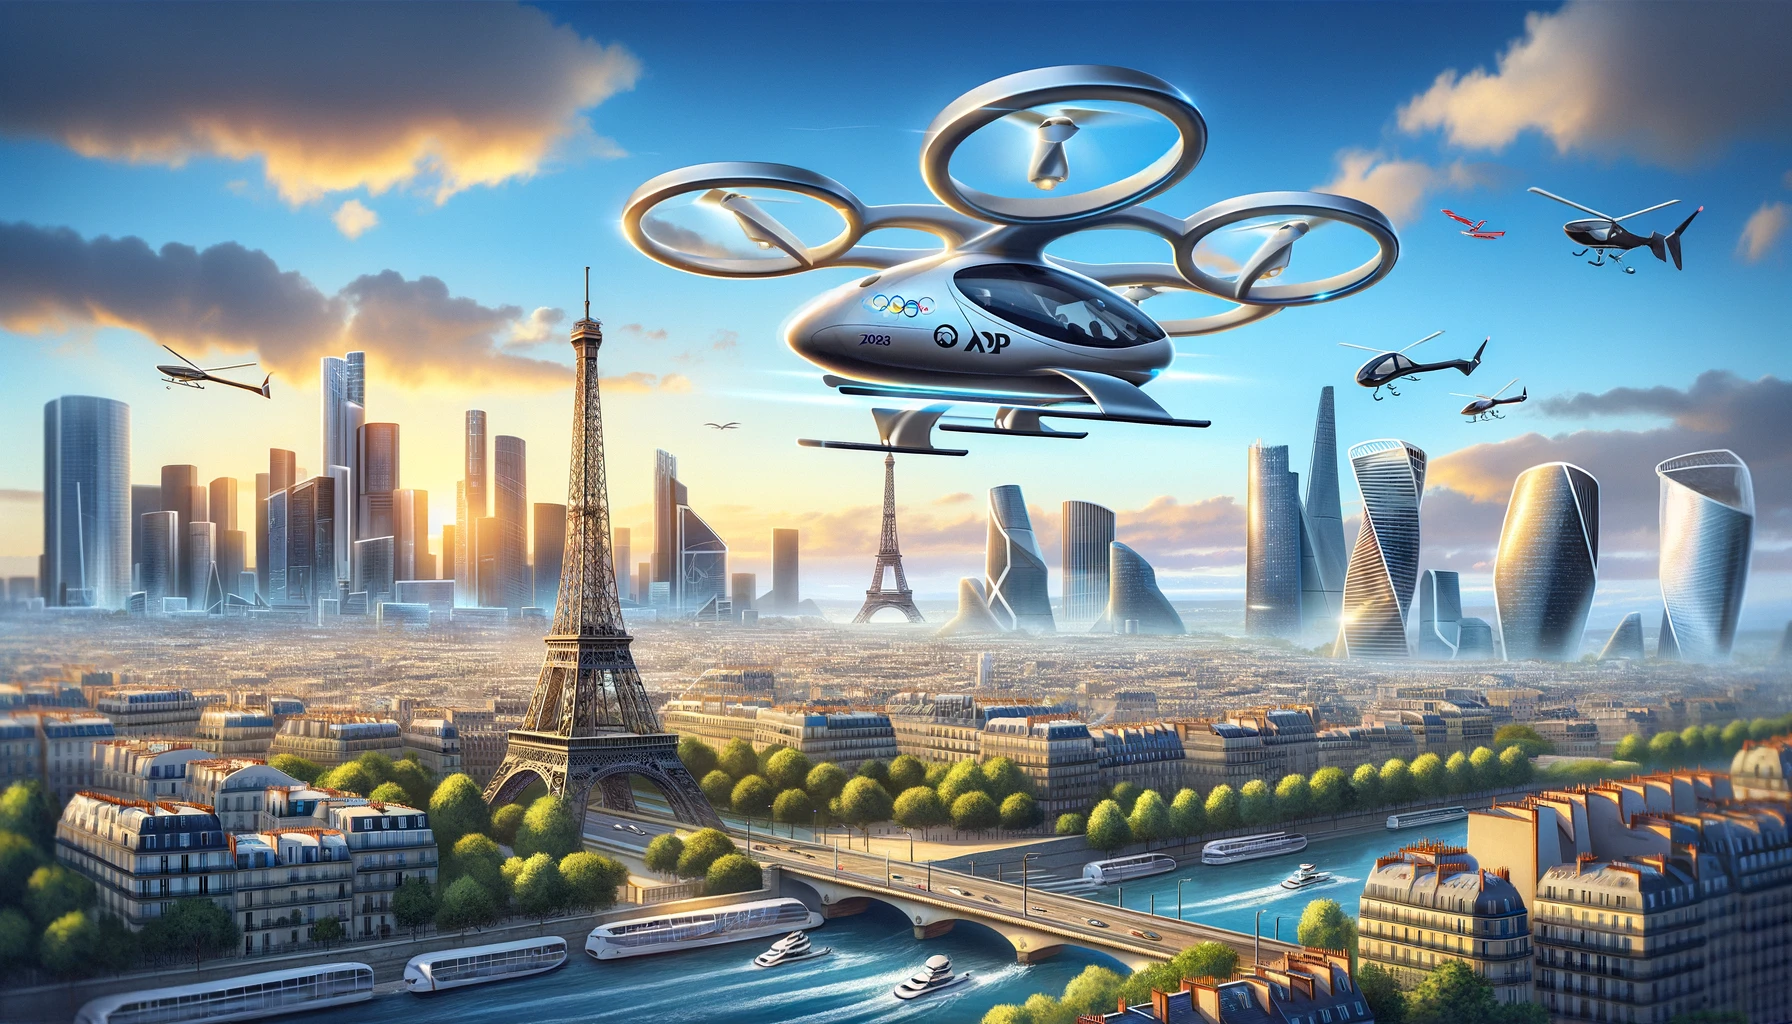 Des taxis volants dans le ciel de Paris pour les JO 2024